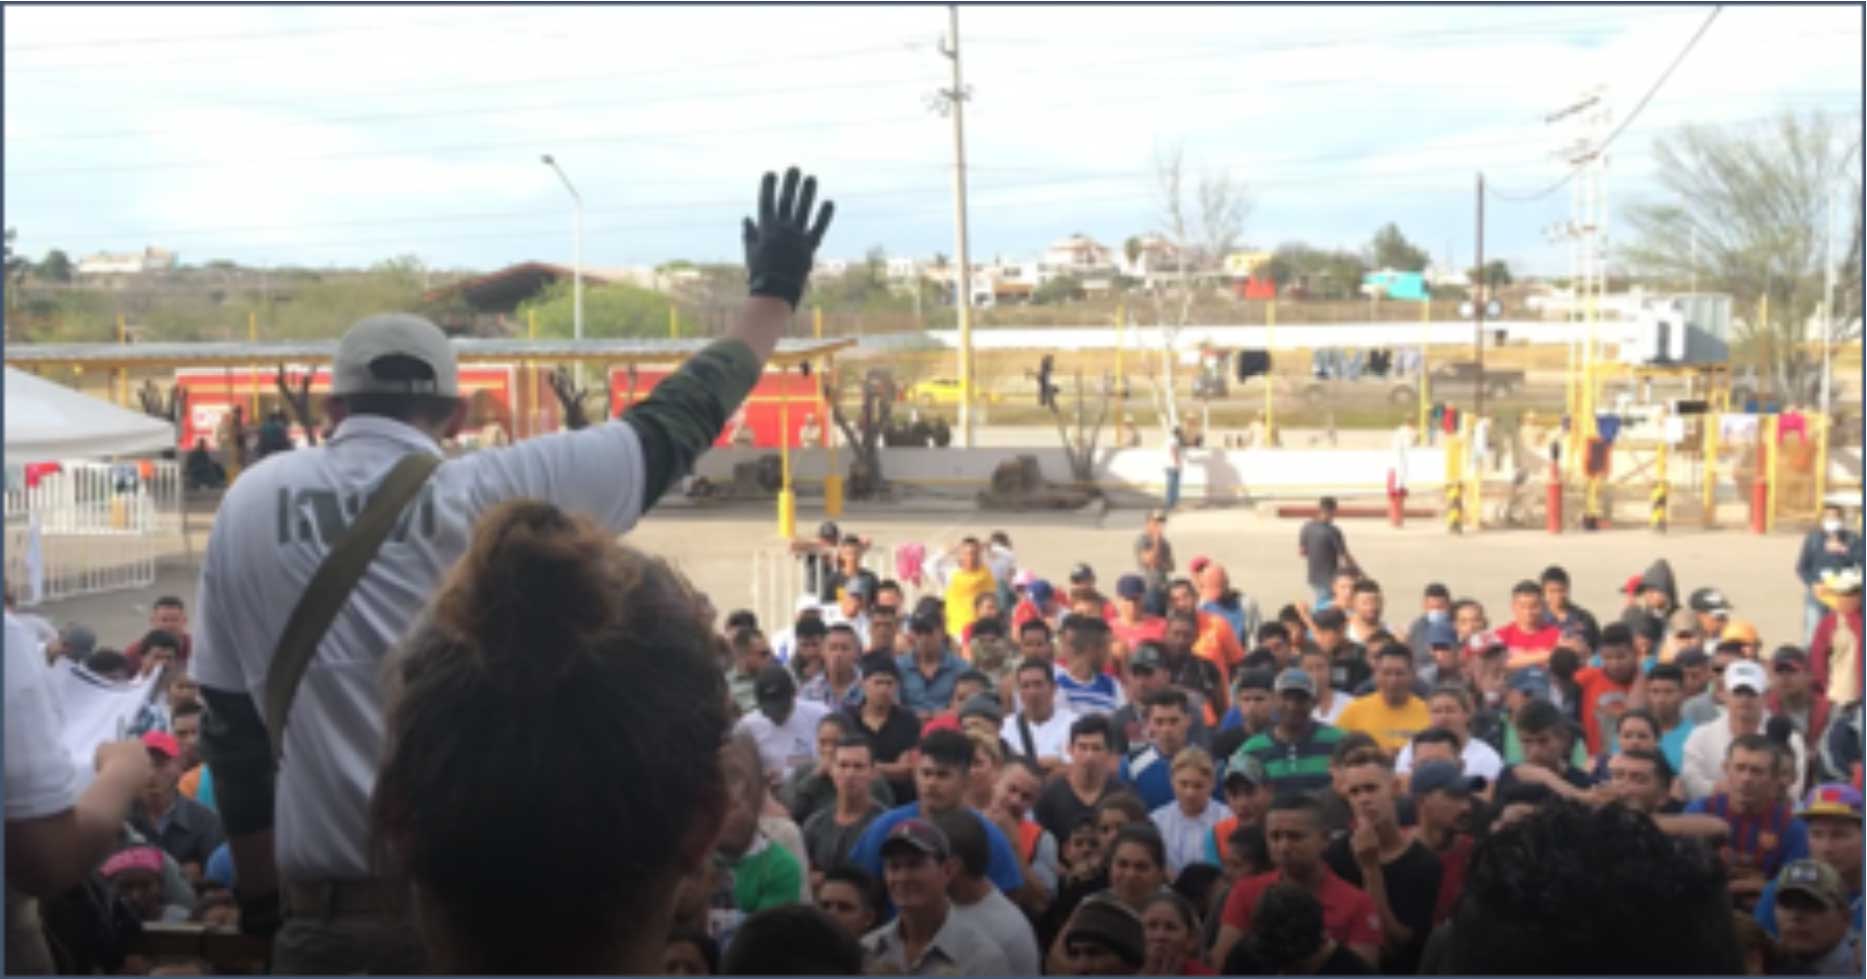 caravan participants in Piedras Negras Mexico near the Texas border in February 2019